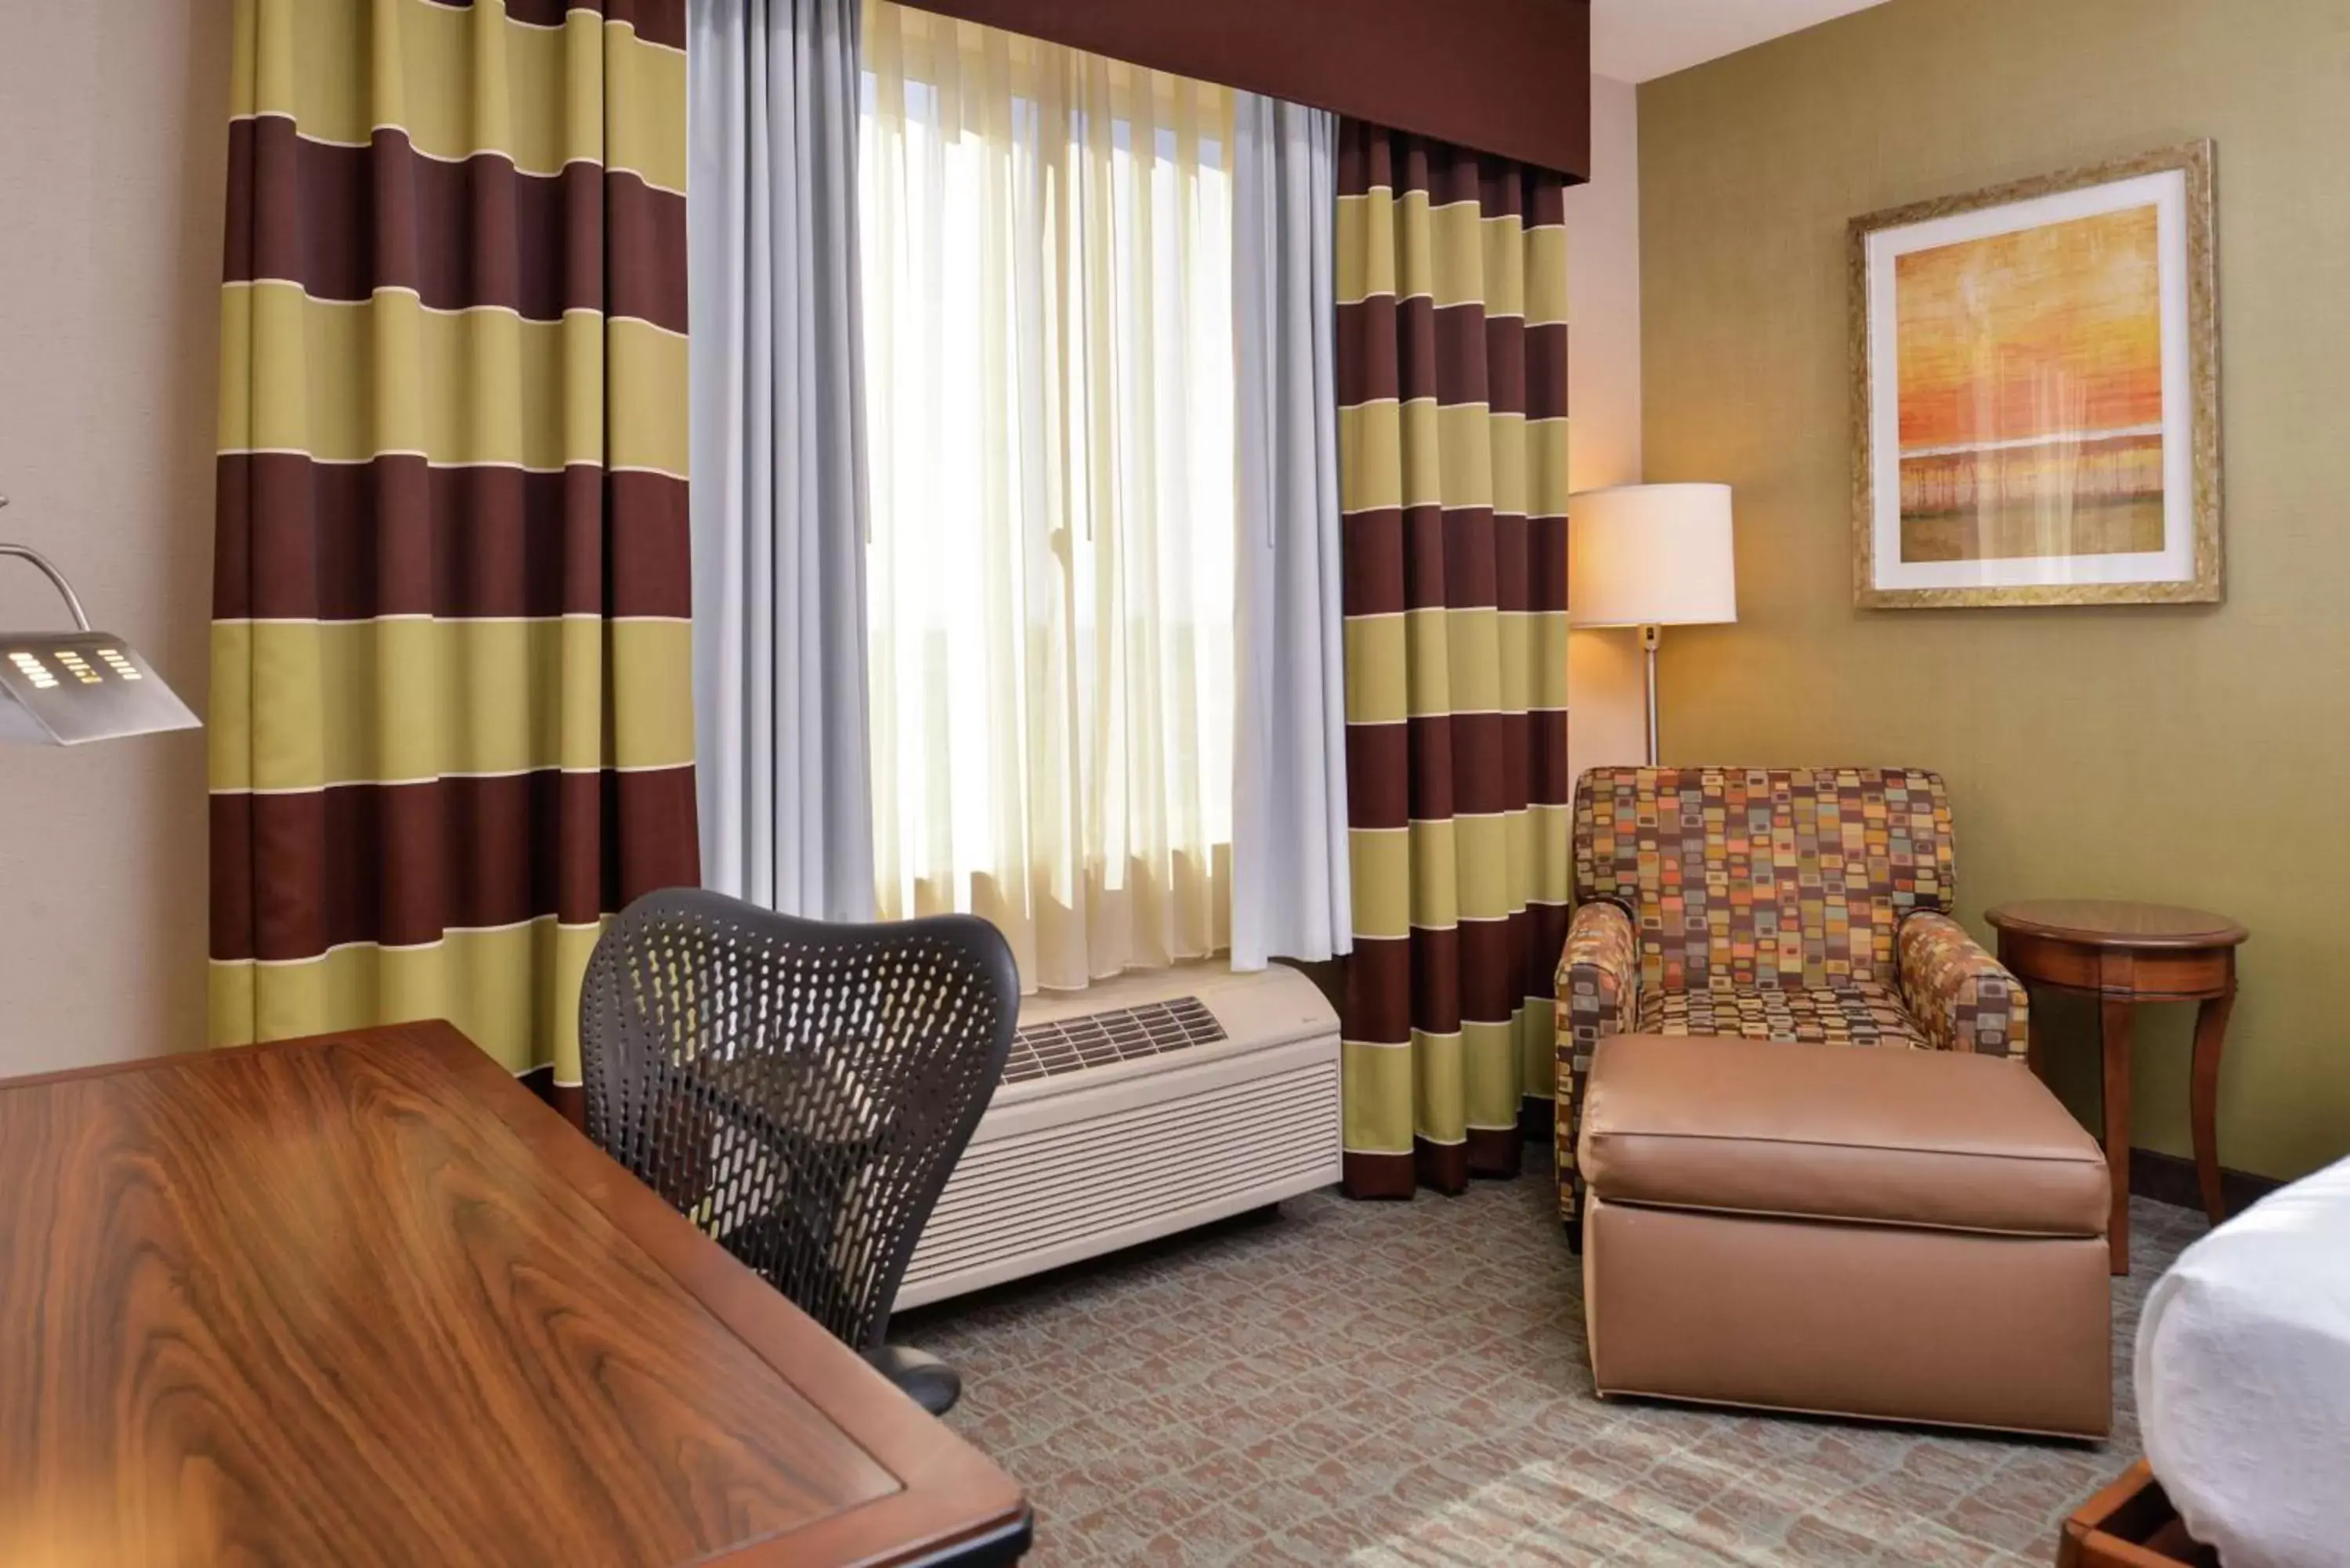 Bedroom, Seating Area in Hilton Garden Inn Boise Spectrum